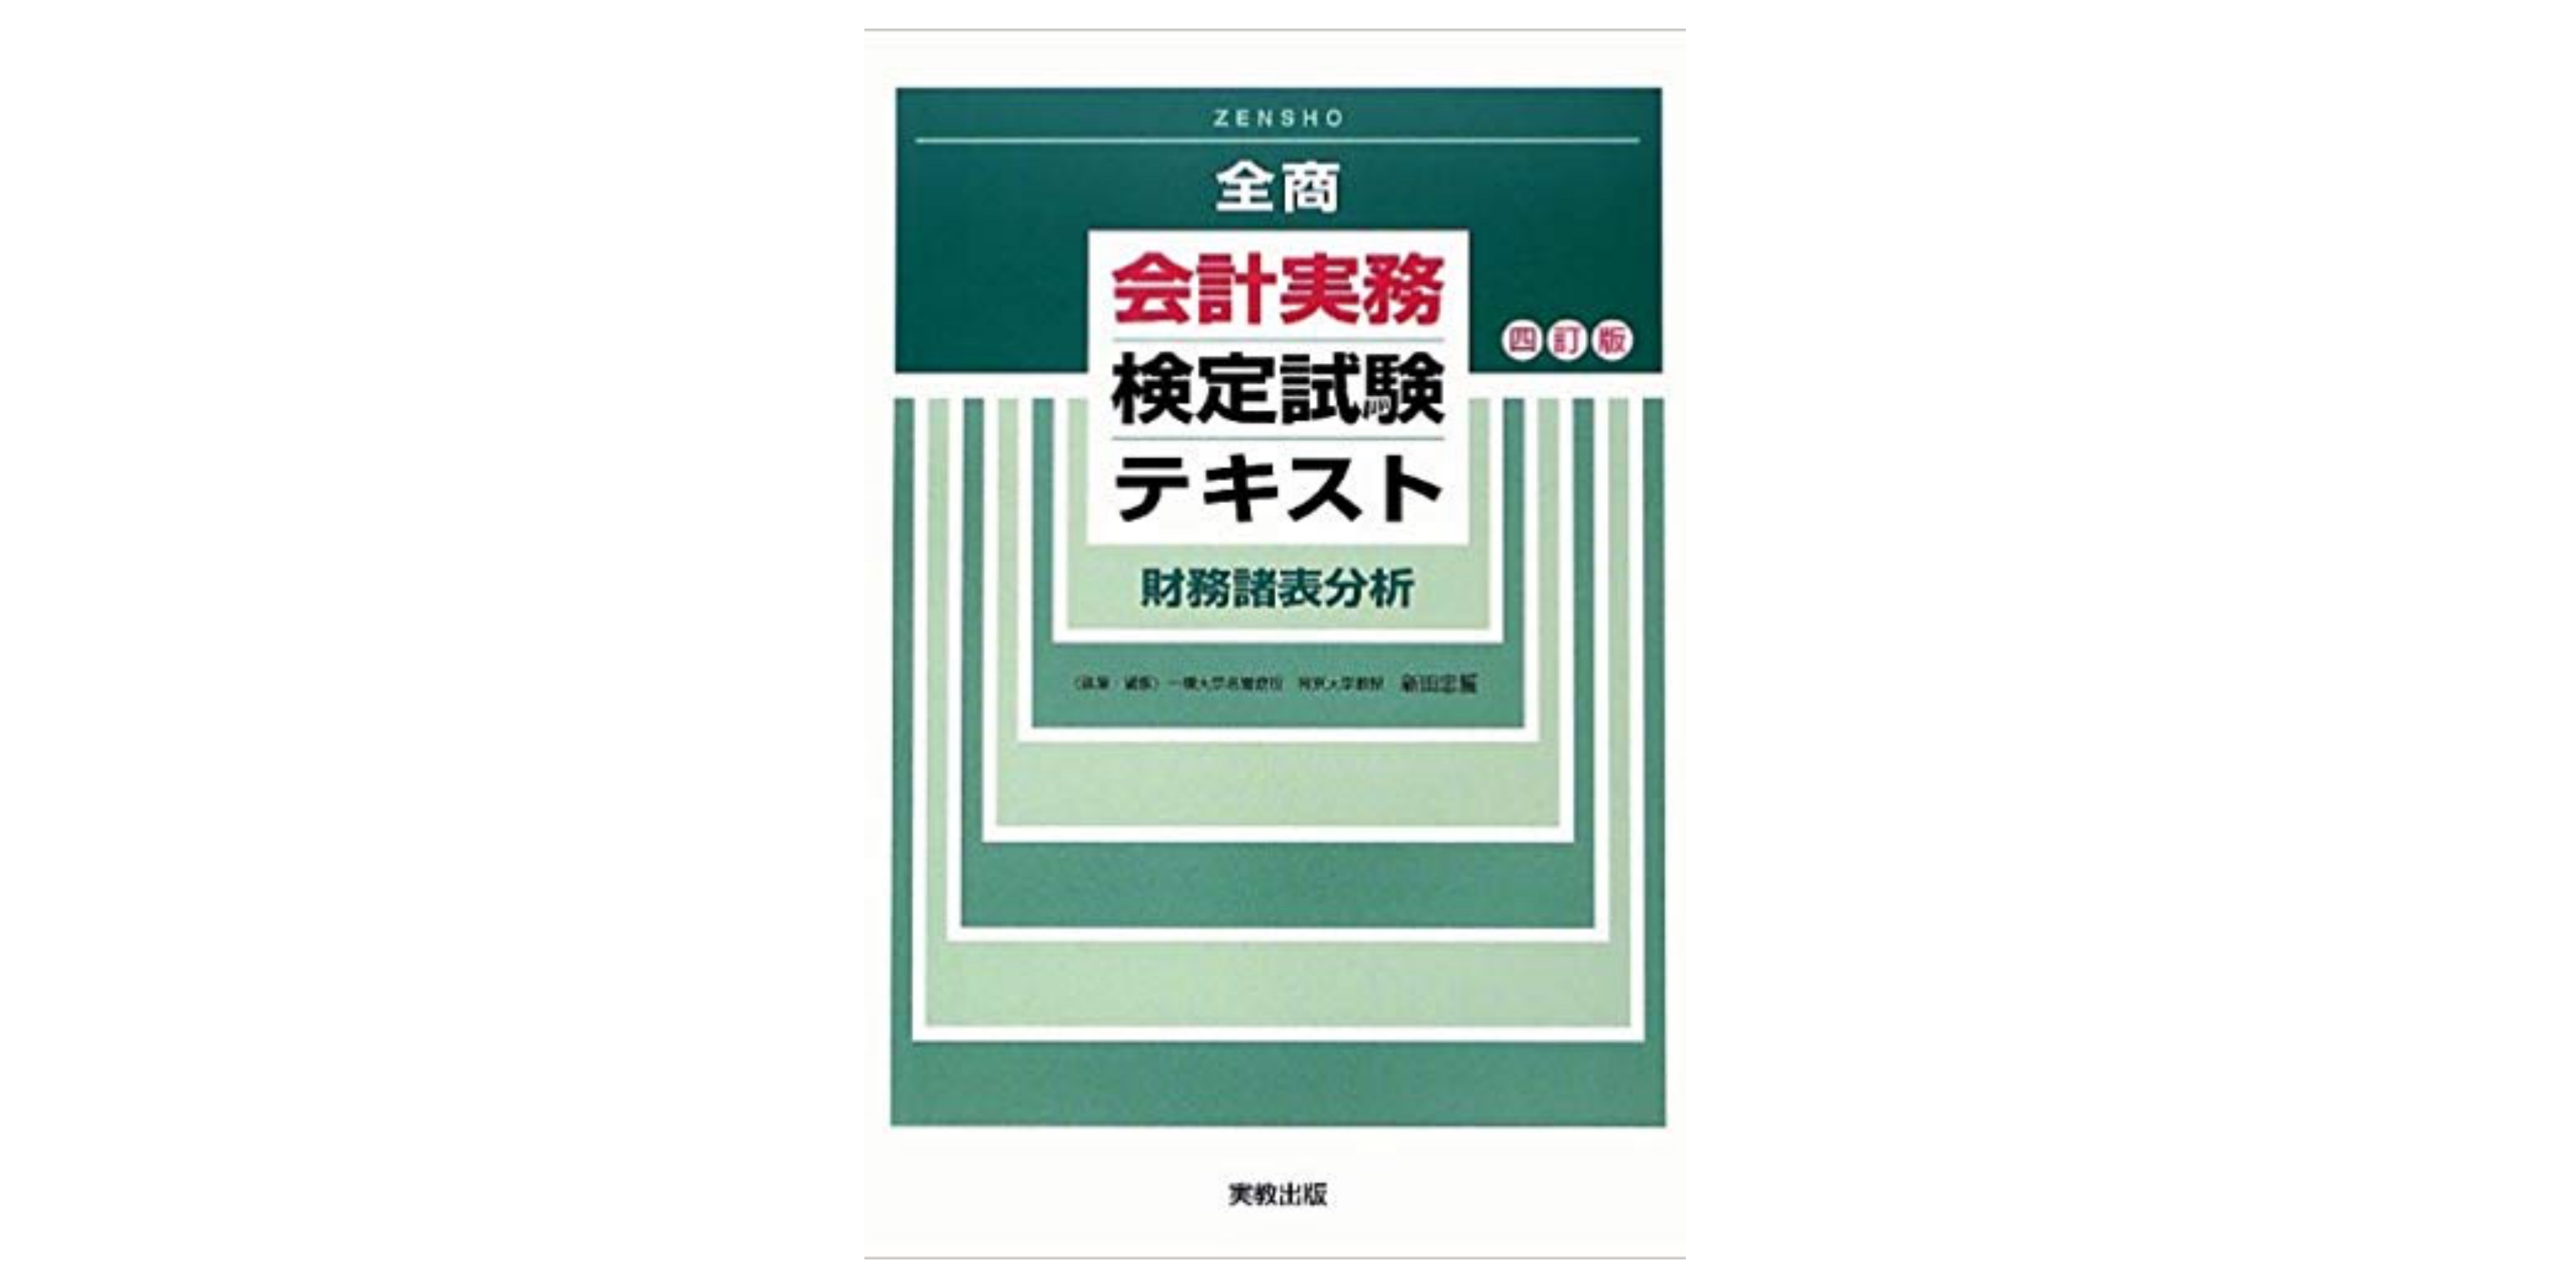 財務報告実務検定 公式テキスト 上巻 第5版 日本ipo実務検定協会 本 通販 Amazon